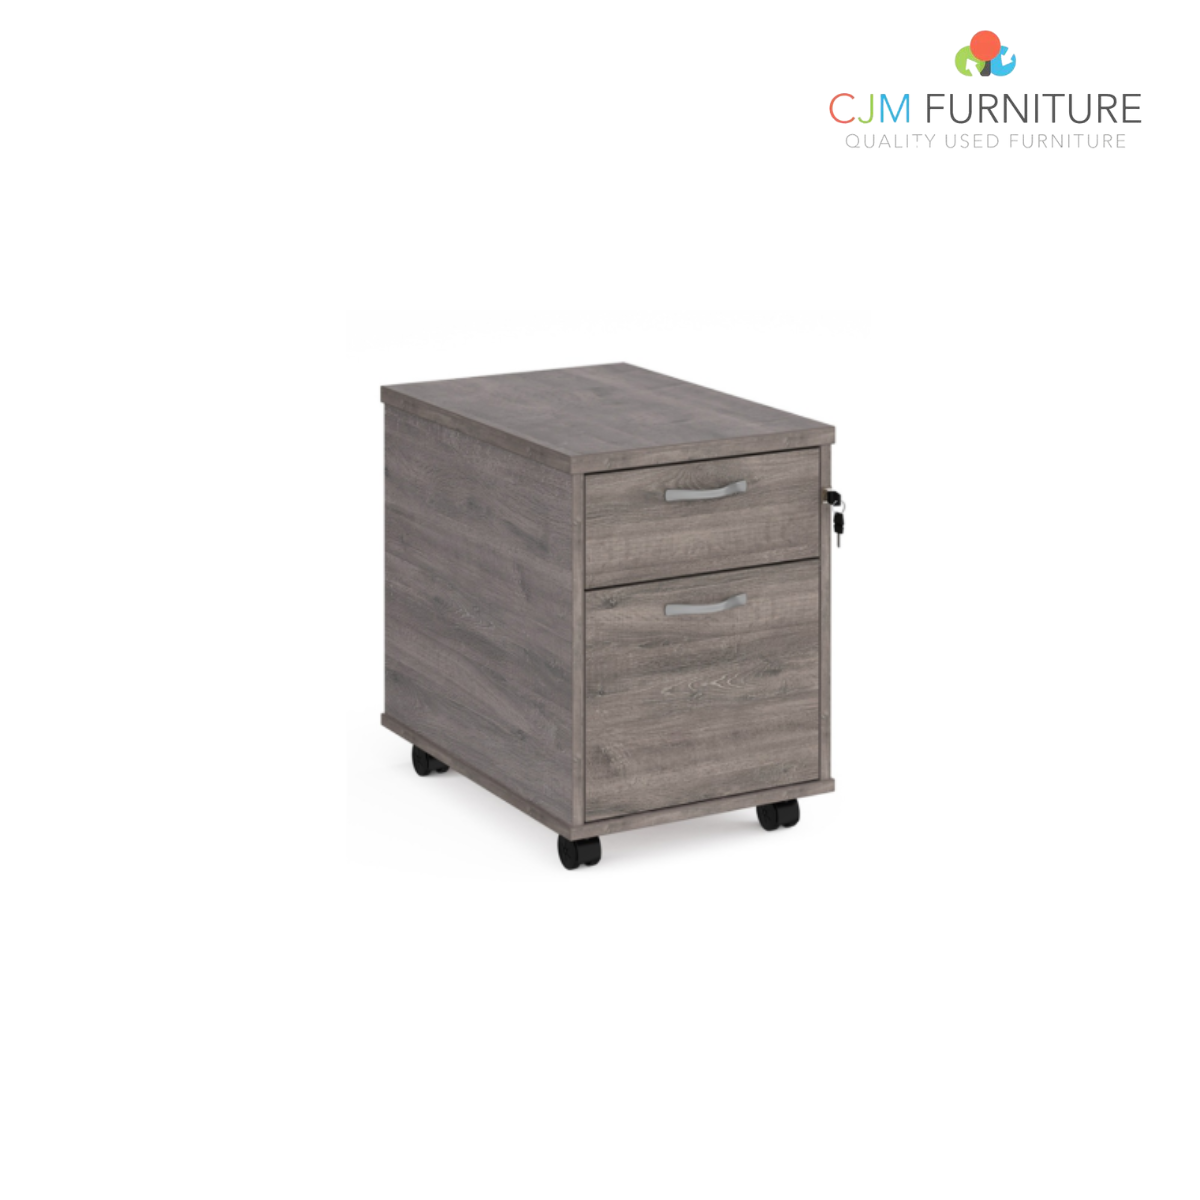 2 or 3 drawer wooden mobile pedestal - Grey Oak   06/02/22